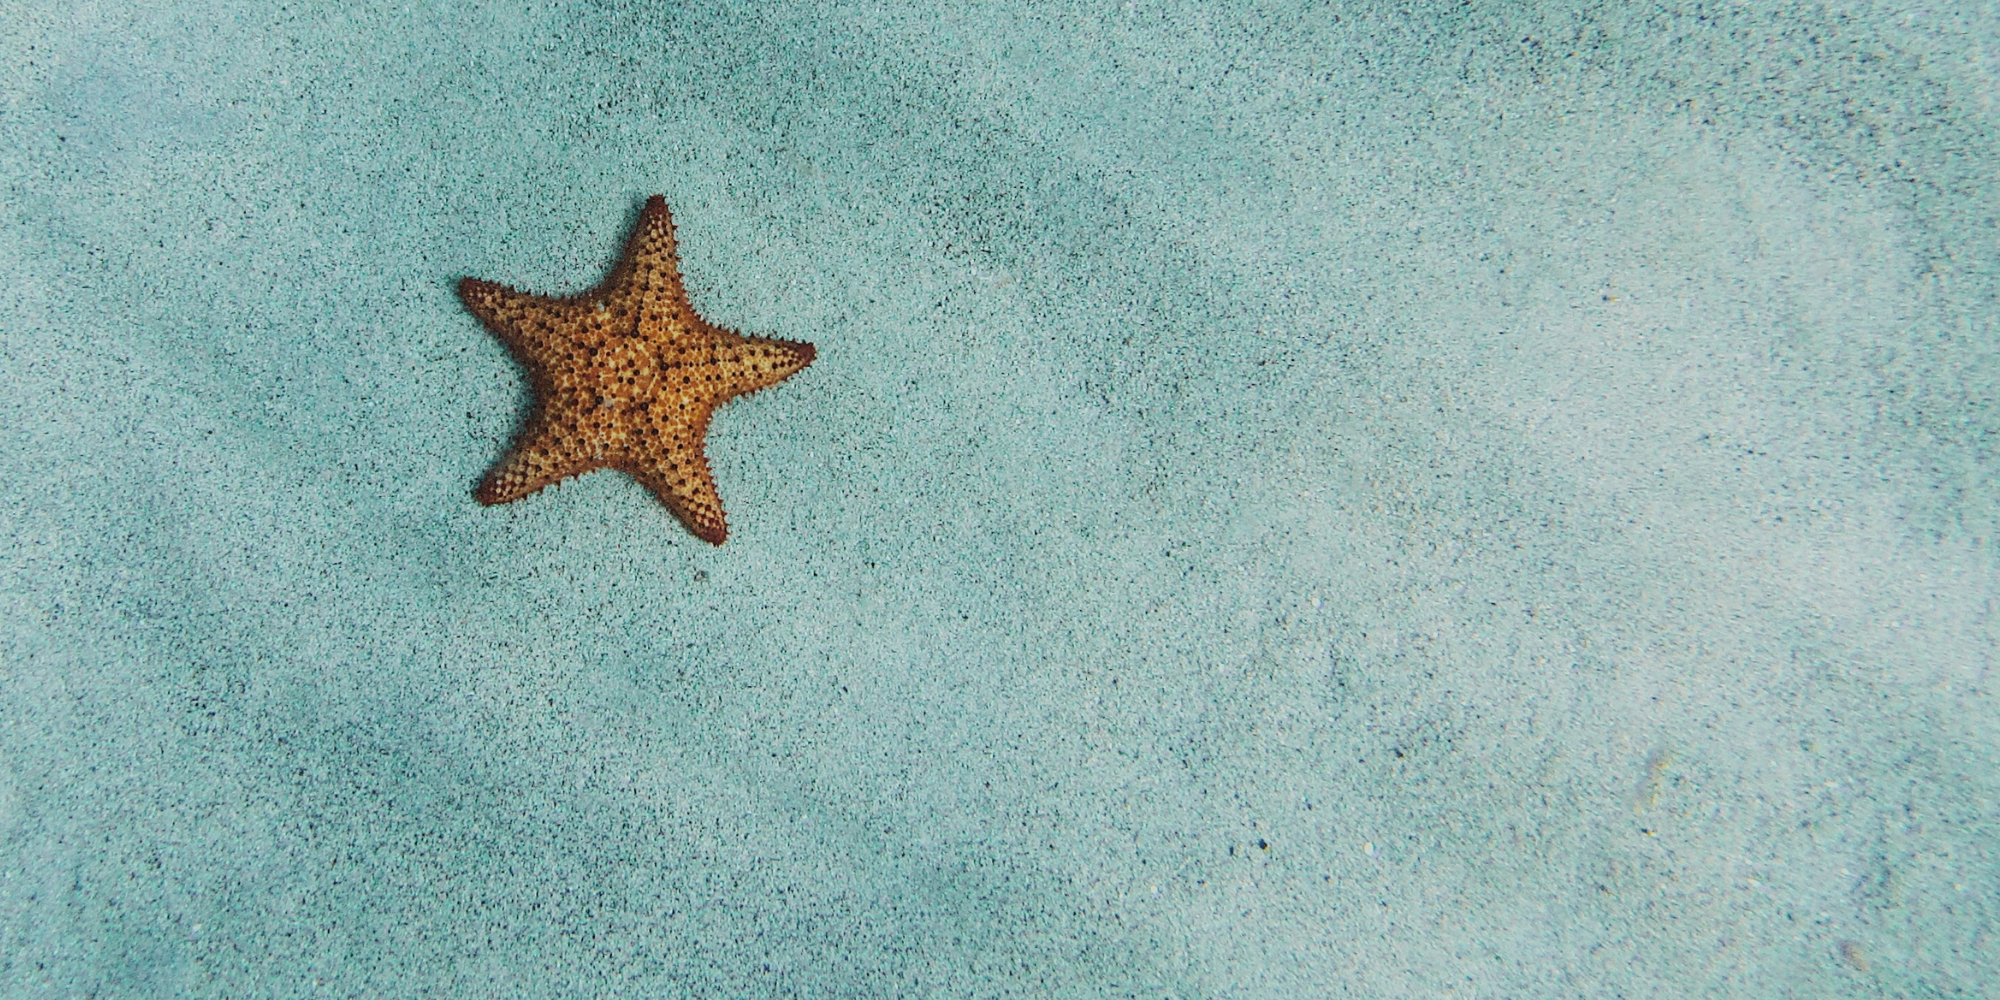 Orange Starfish on the sand under water